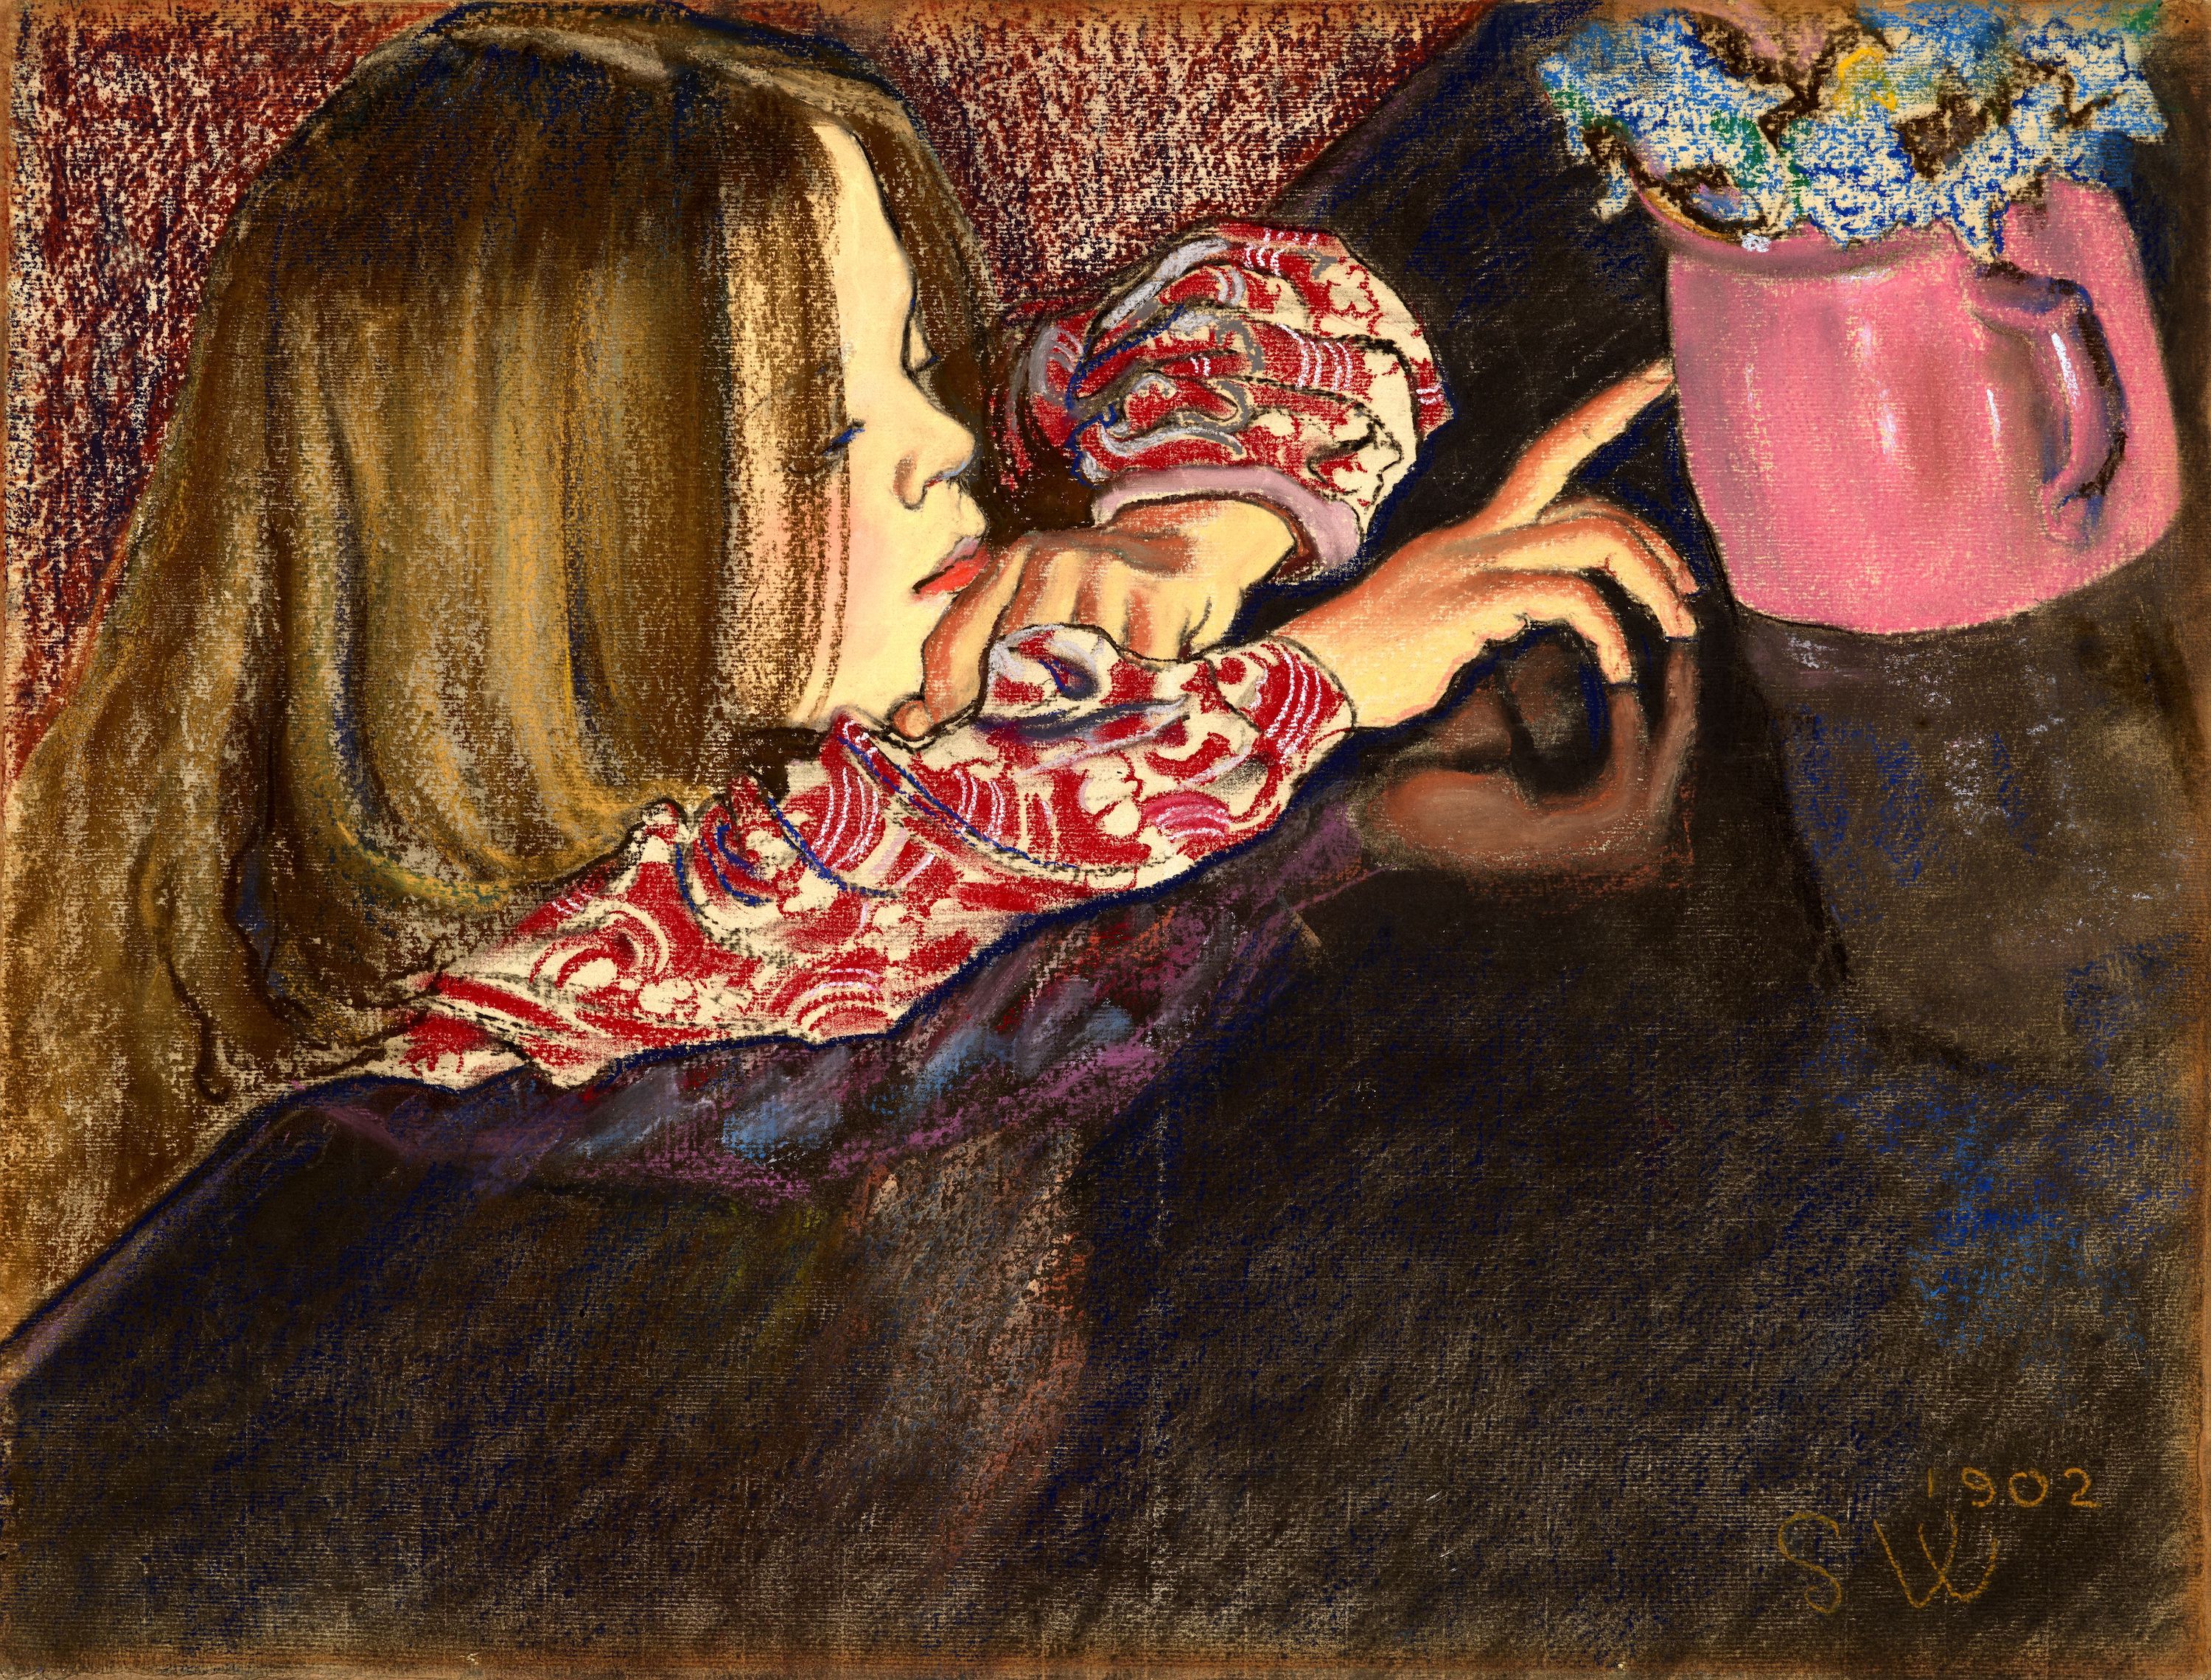 Helenka z wazonem  by Stanisław Wyspiański - 1902 - 47,5 x 62,8 cm 